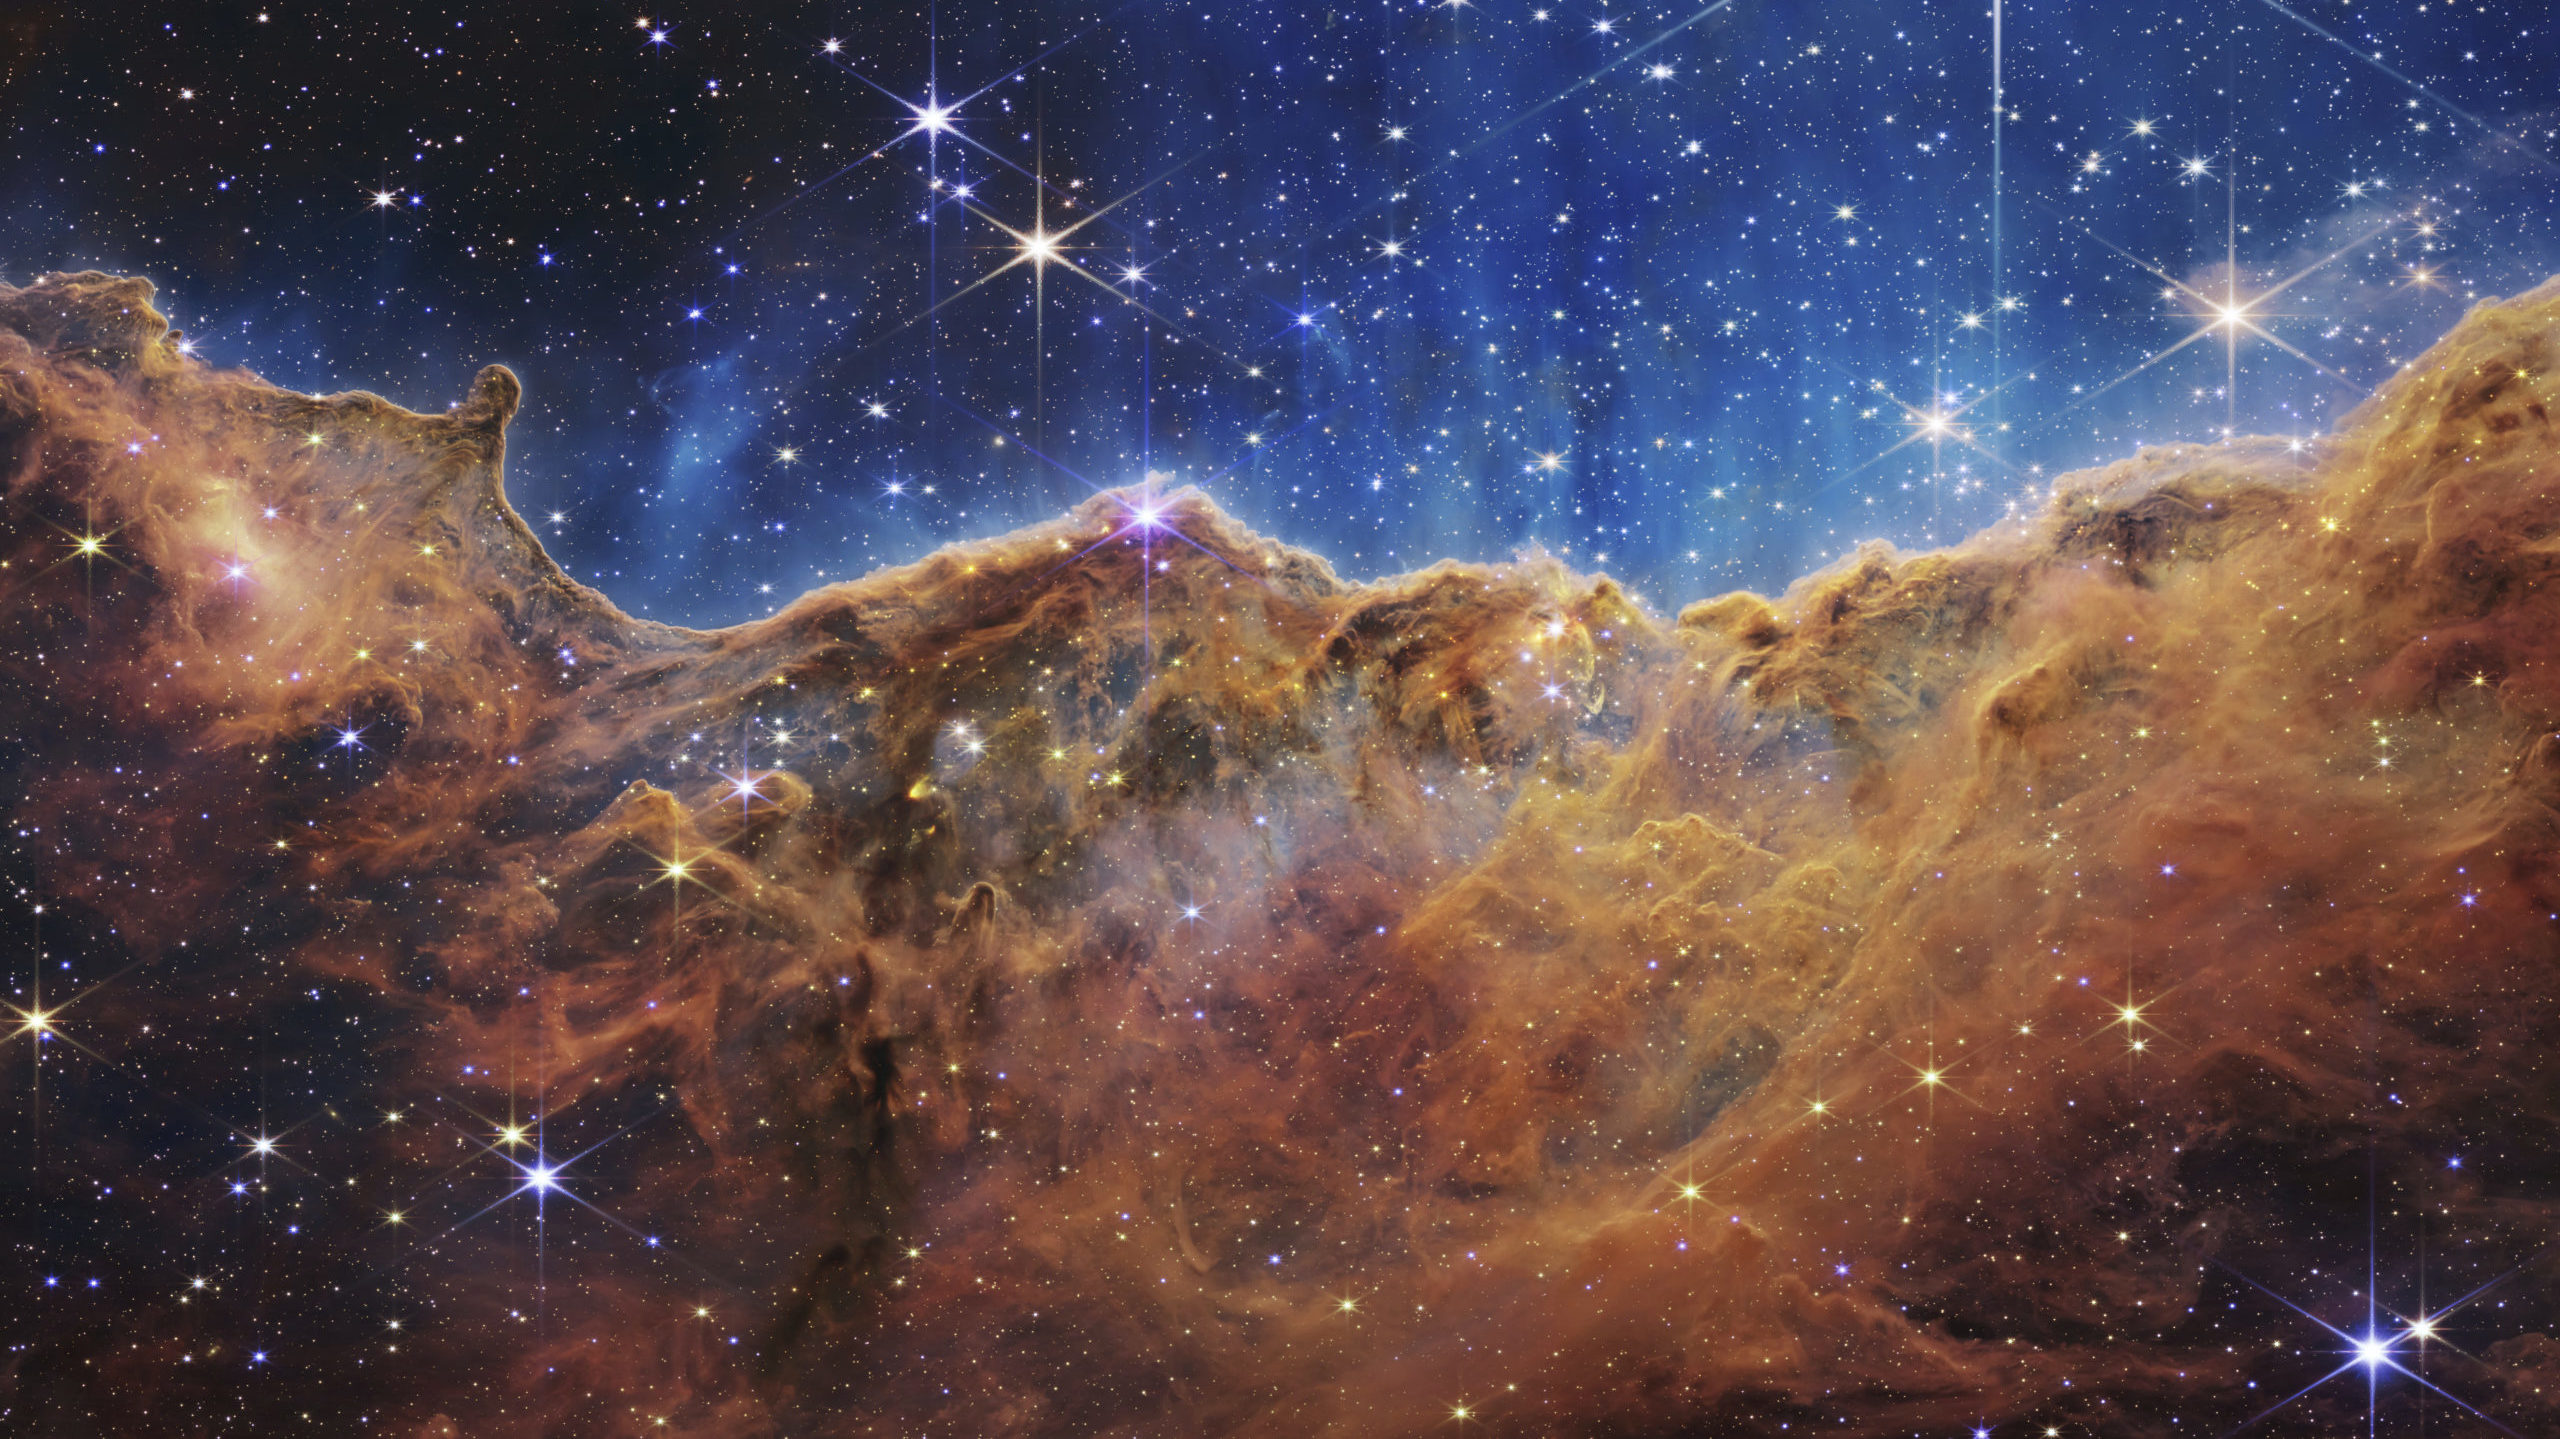 One of the new NASA photos, shows the Carina Nebula...